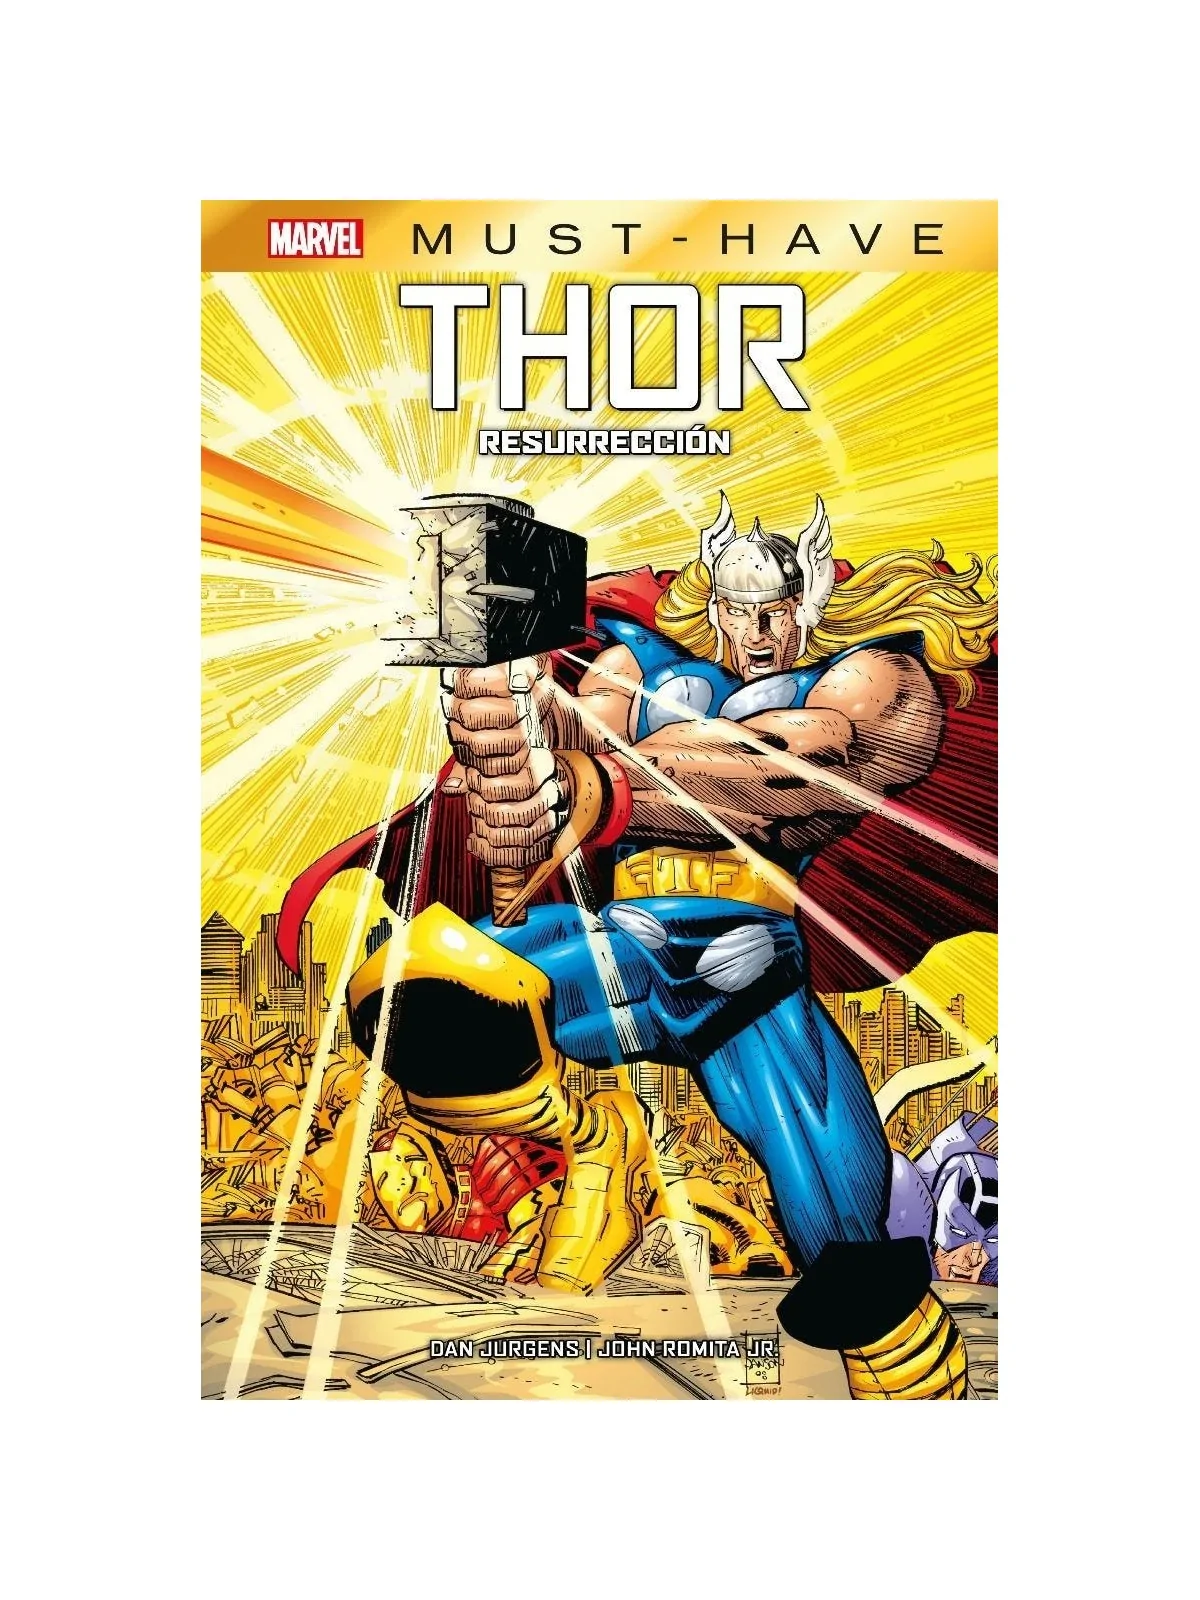 Comprar Marvel Must-Have - Thor: Resurrección barato al mejor precio 1